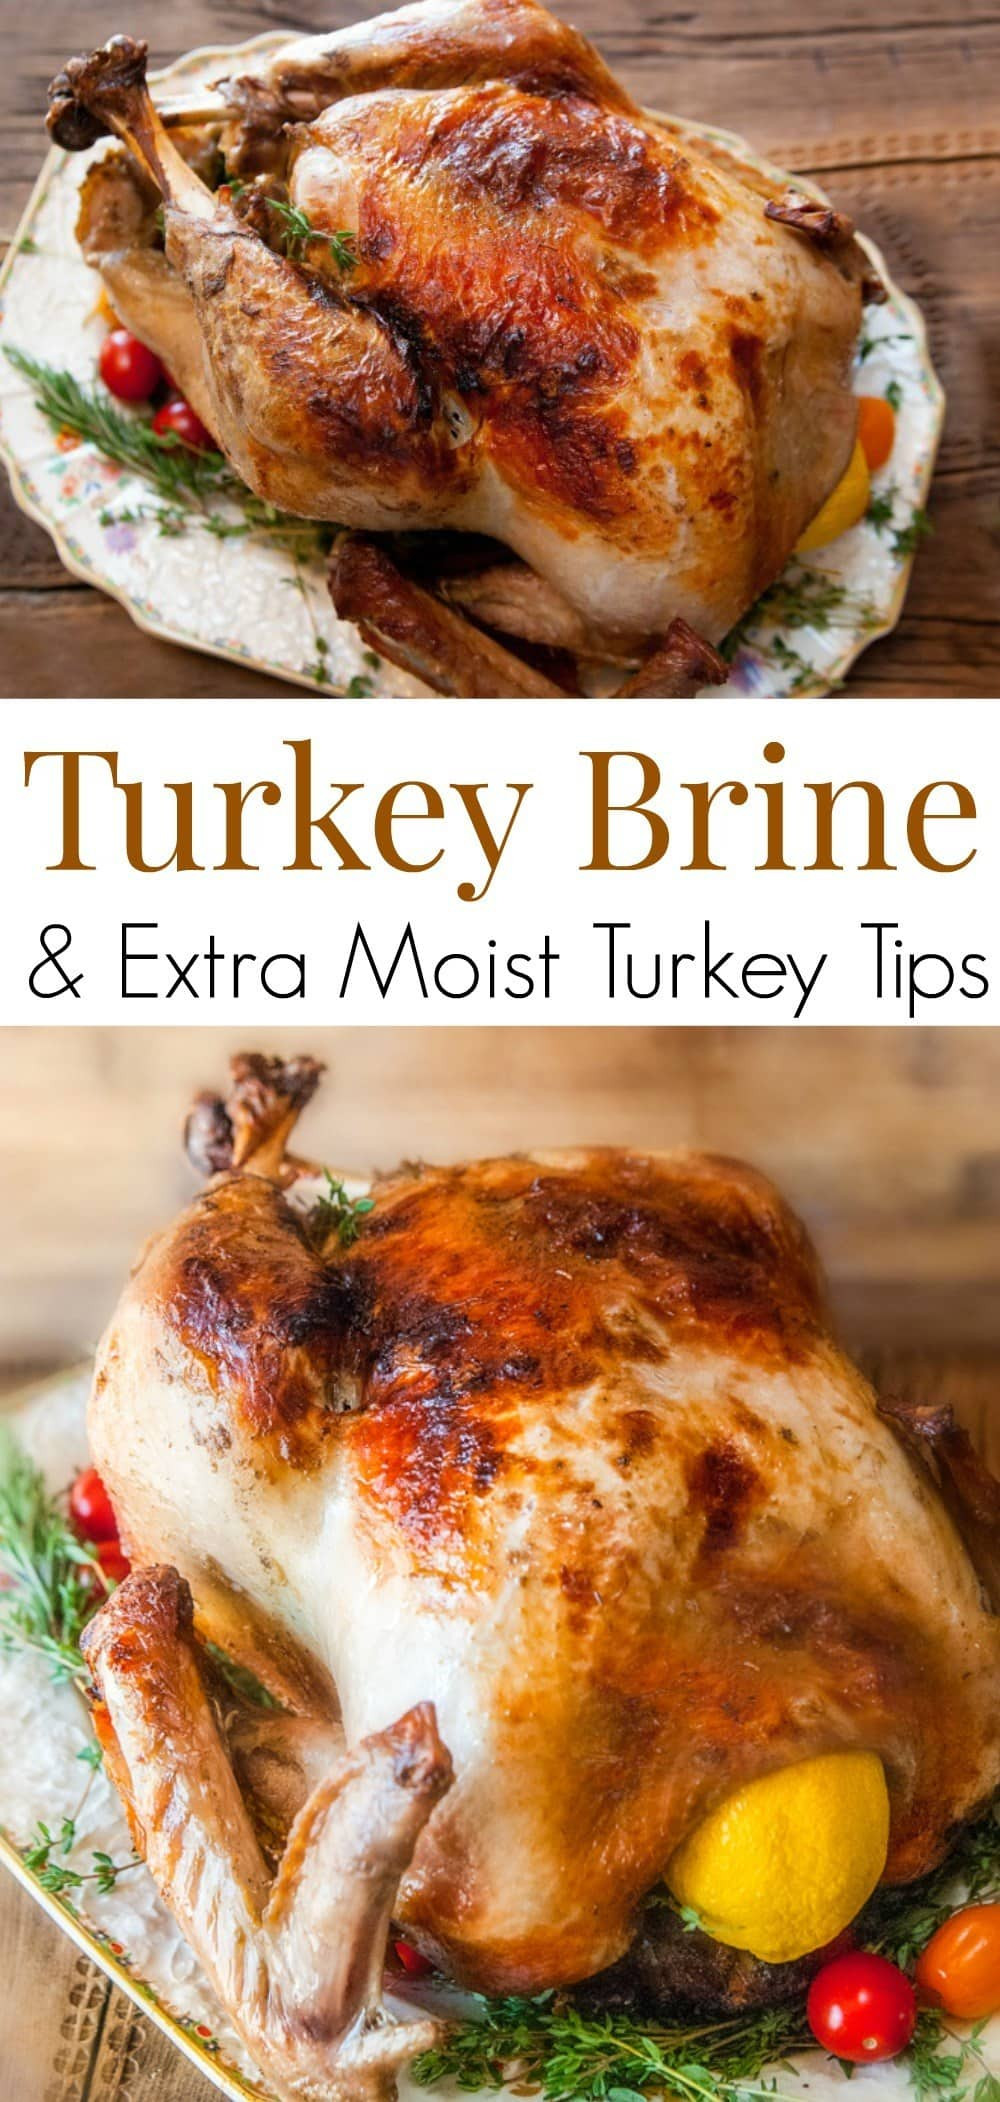 Good Turkey Brine
 Citrus & Herb Turkey Brine Recipe for a Juicy Thanksgiving